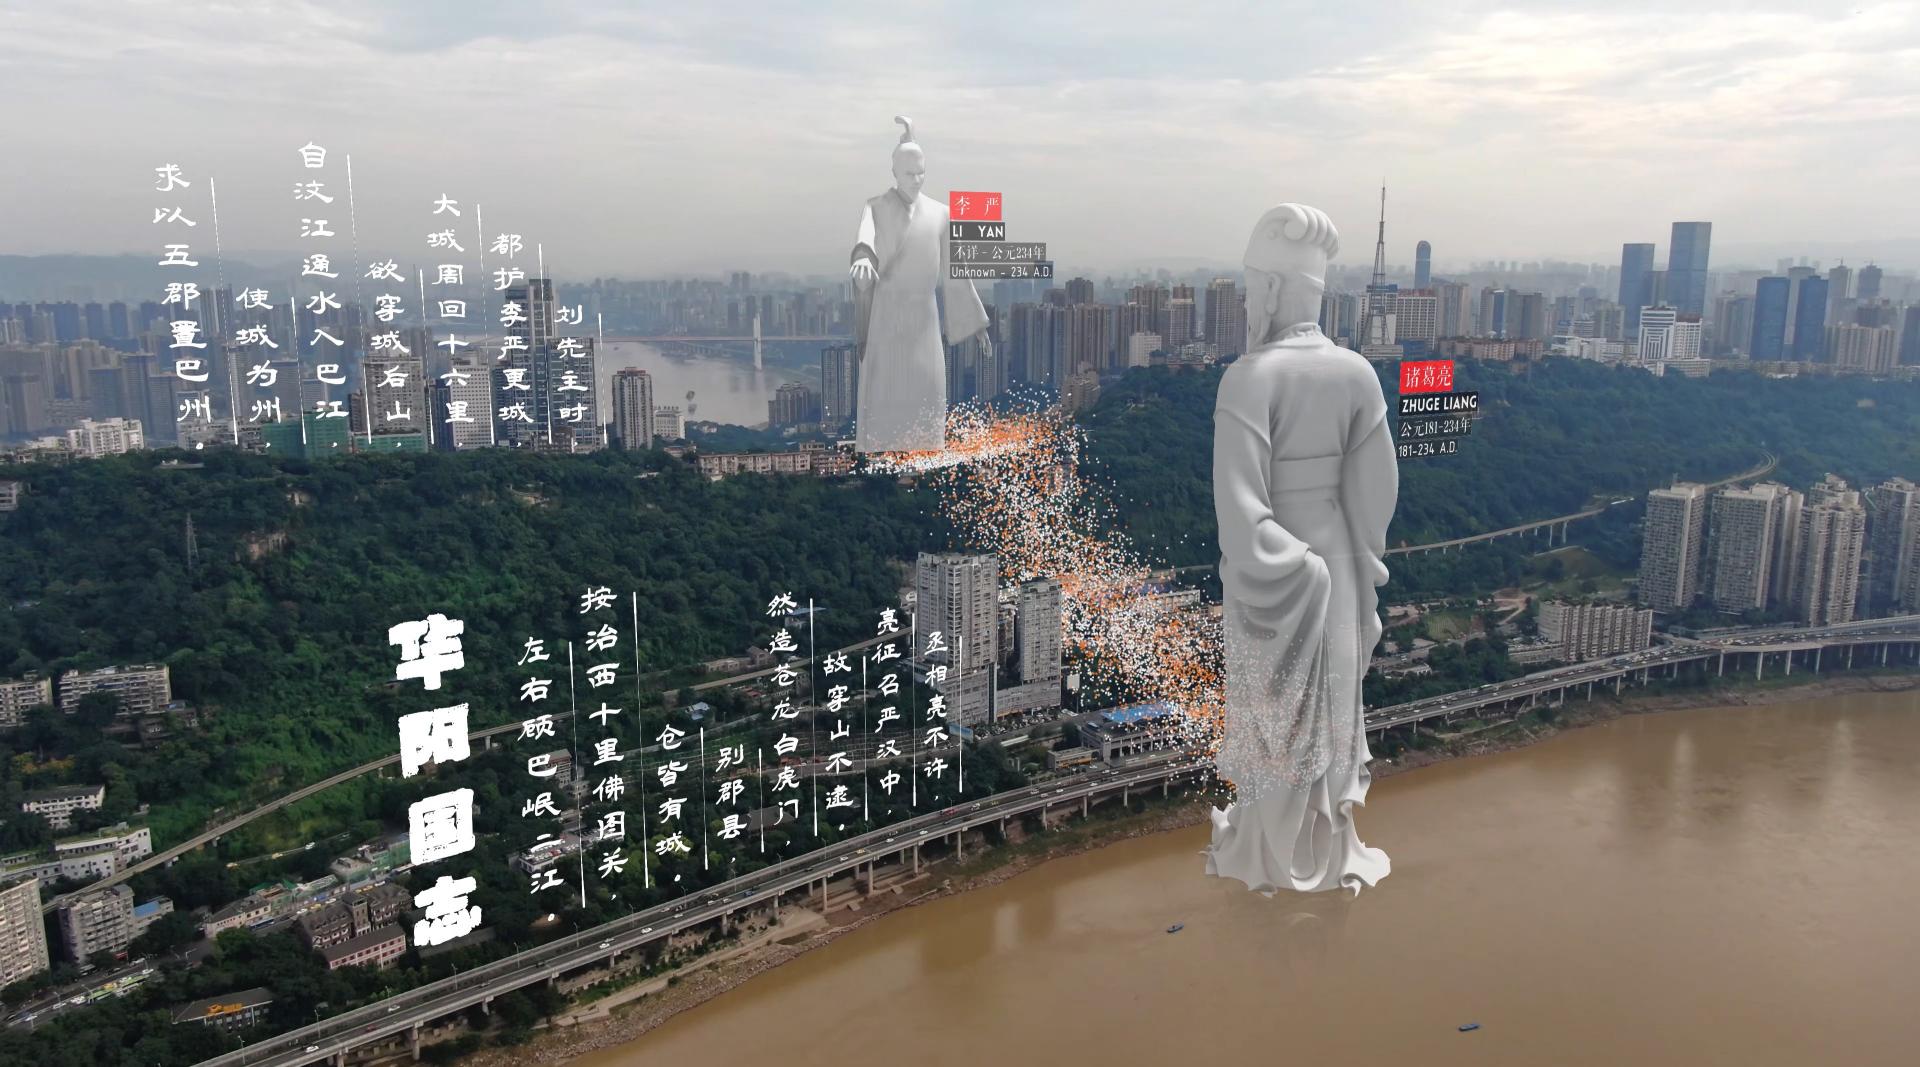 重庆_航拍_增强现实_城市解析 | 《叠影入境 Image In Place》4K